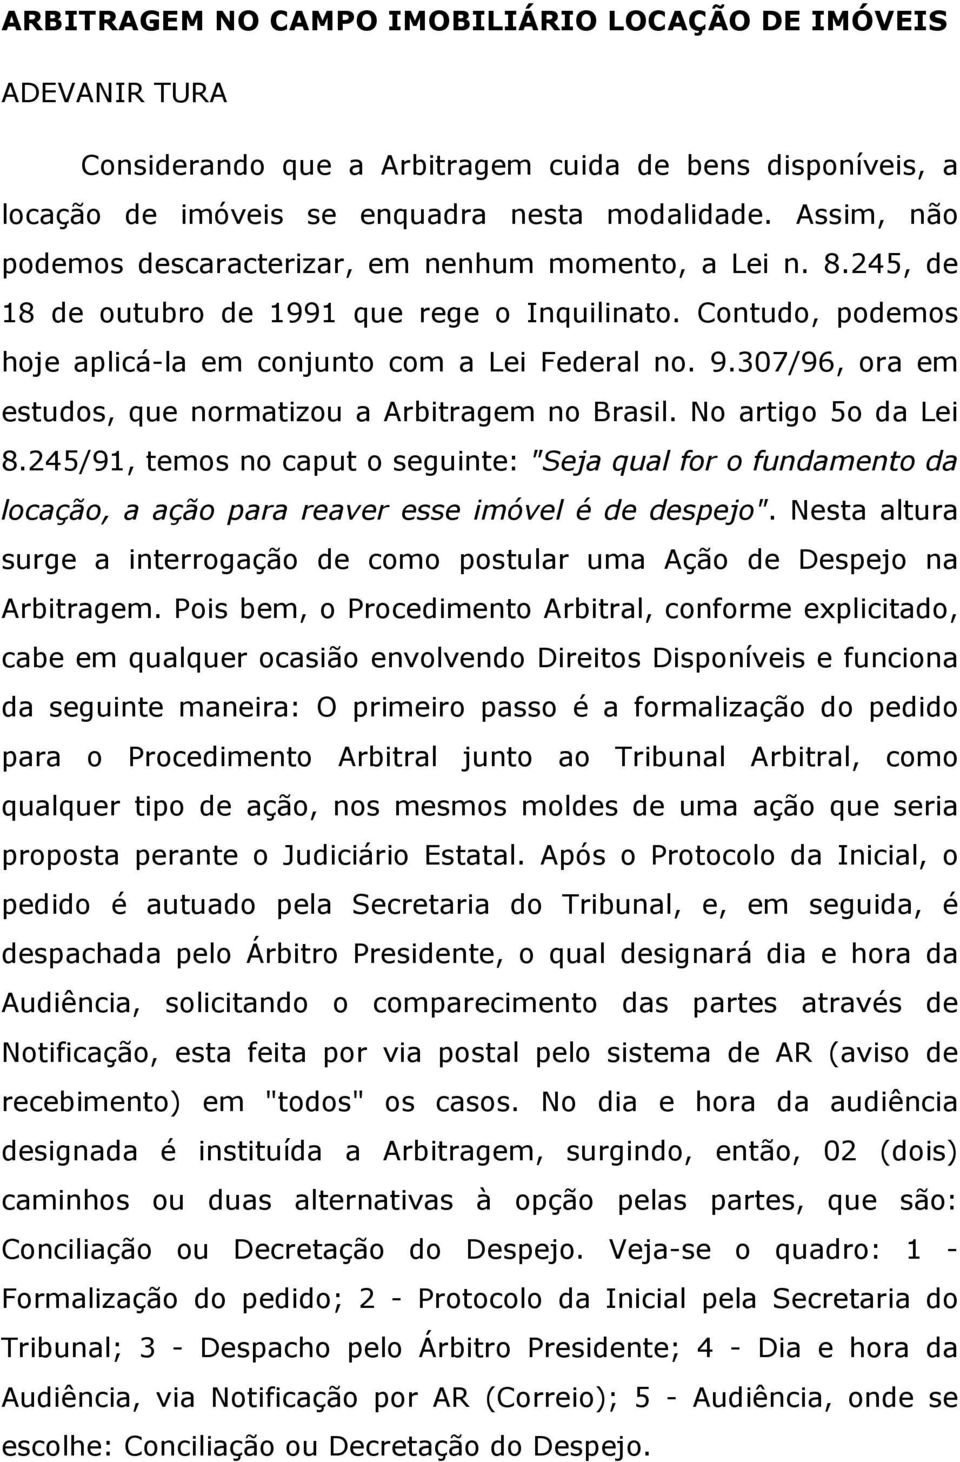 307/96, ora em estudos, que normatizou a Arbitragem no Brasil. No artigo 5o da Lei 8.